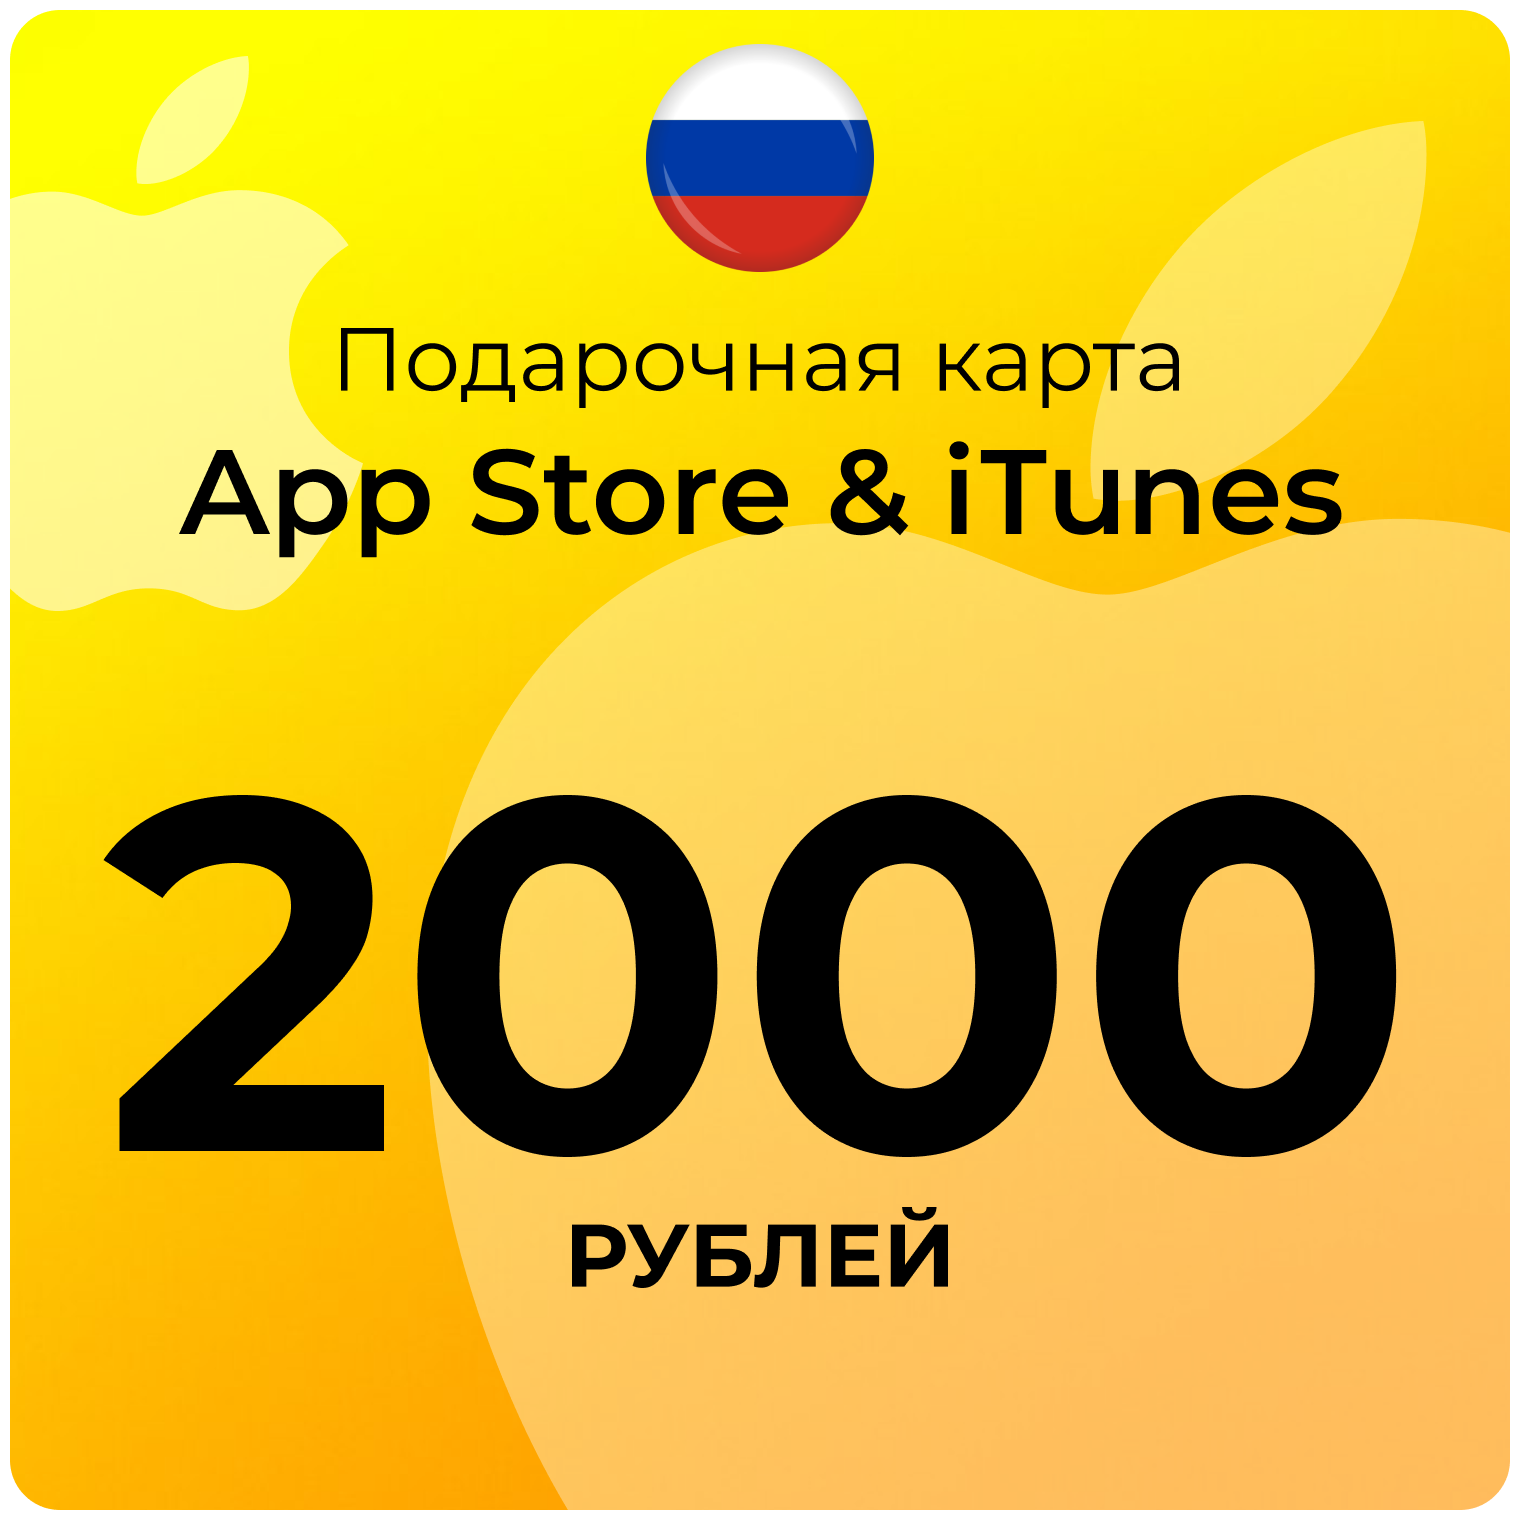 Карта для пополнения (подарочная) App Store & iTunes (Россия) 2000 рублей